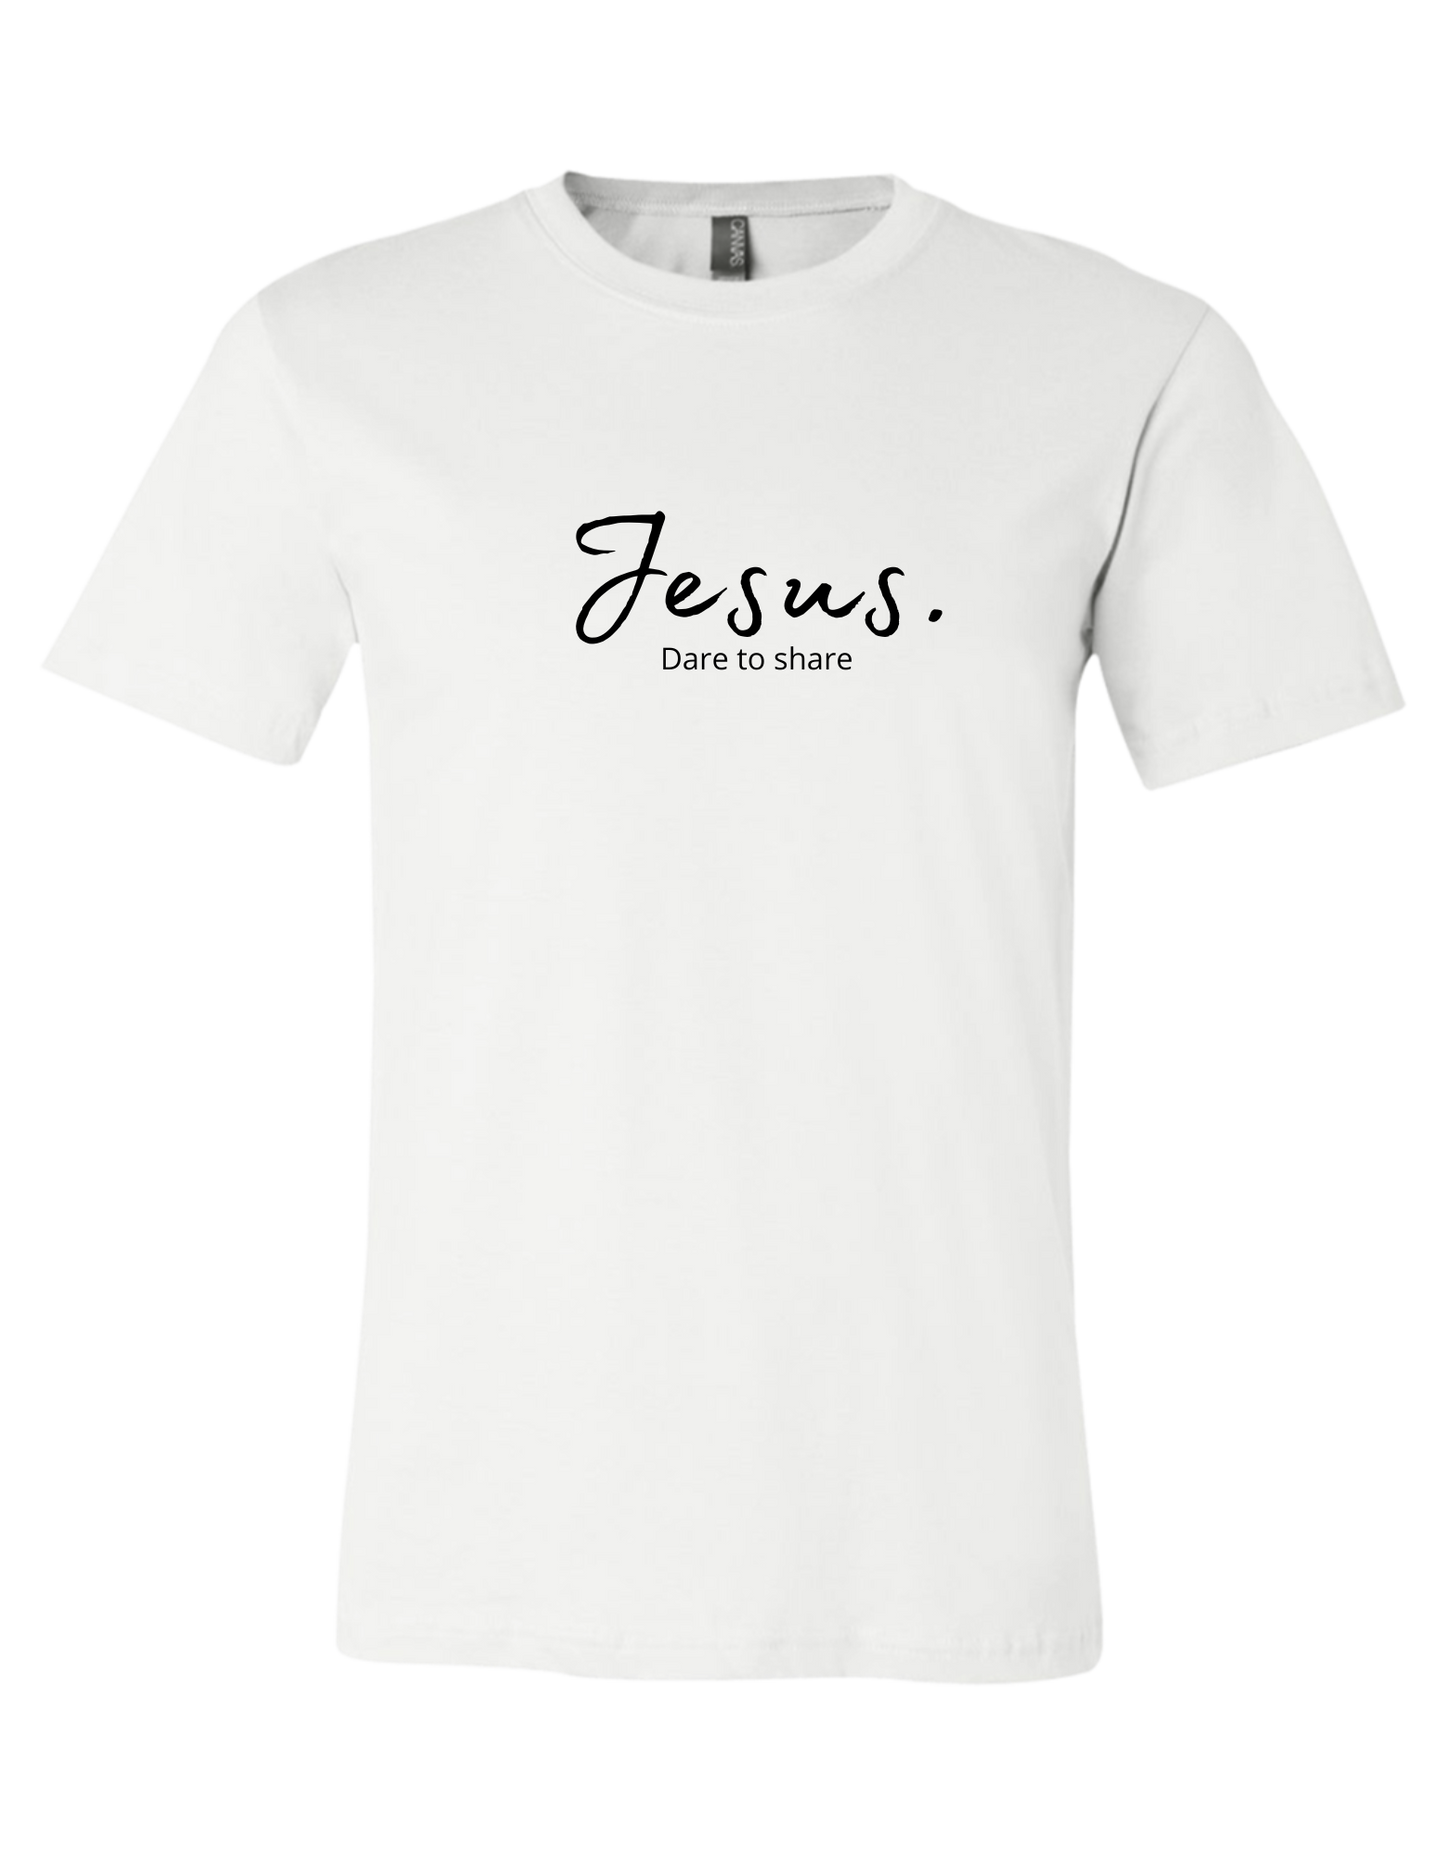 T-Shirt - Jesus. Dare to share.